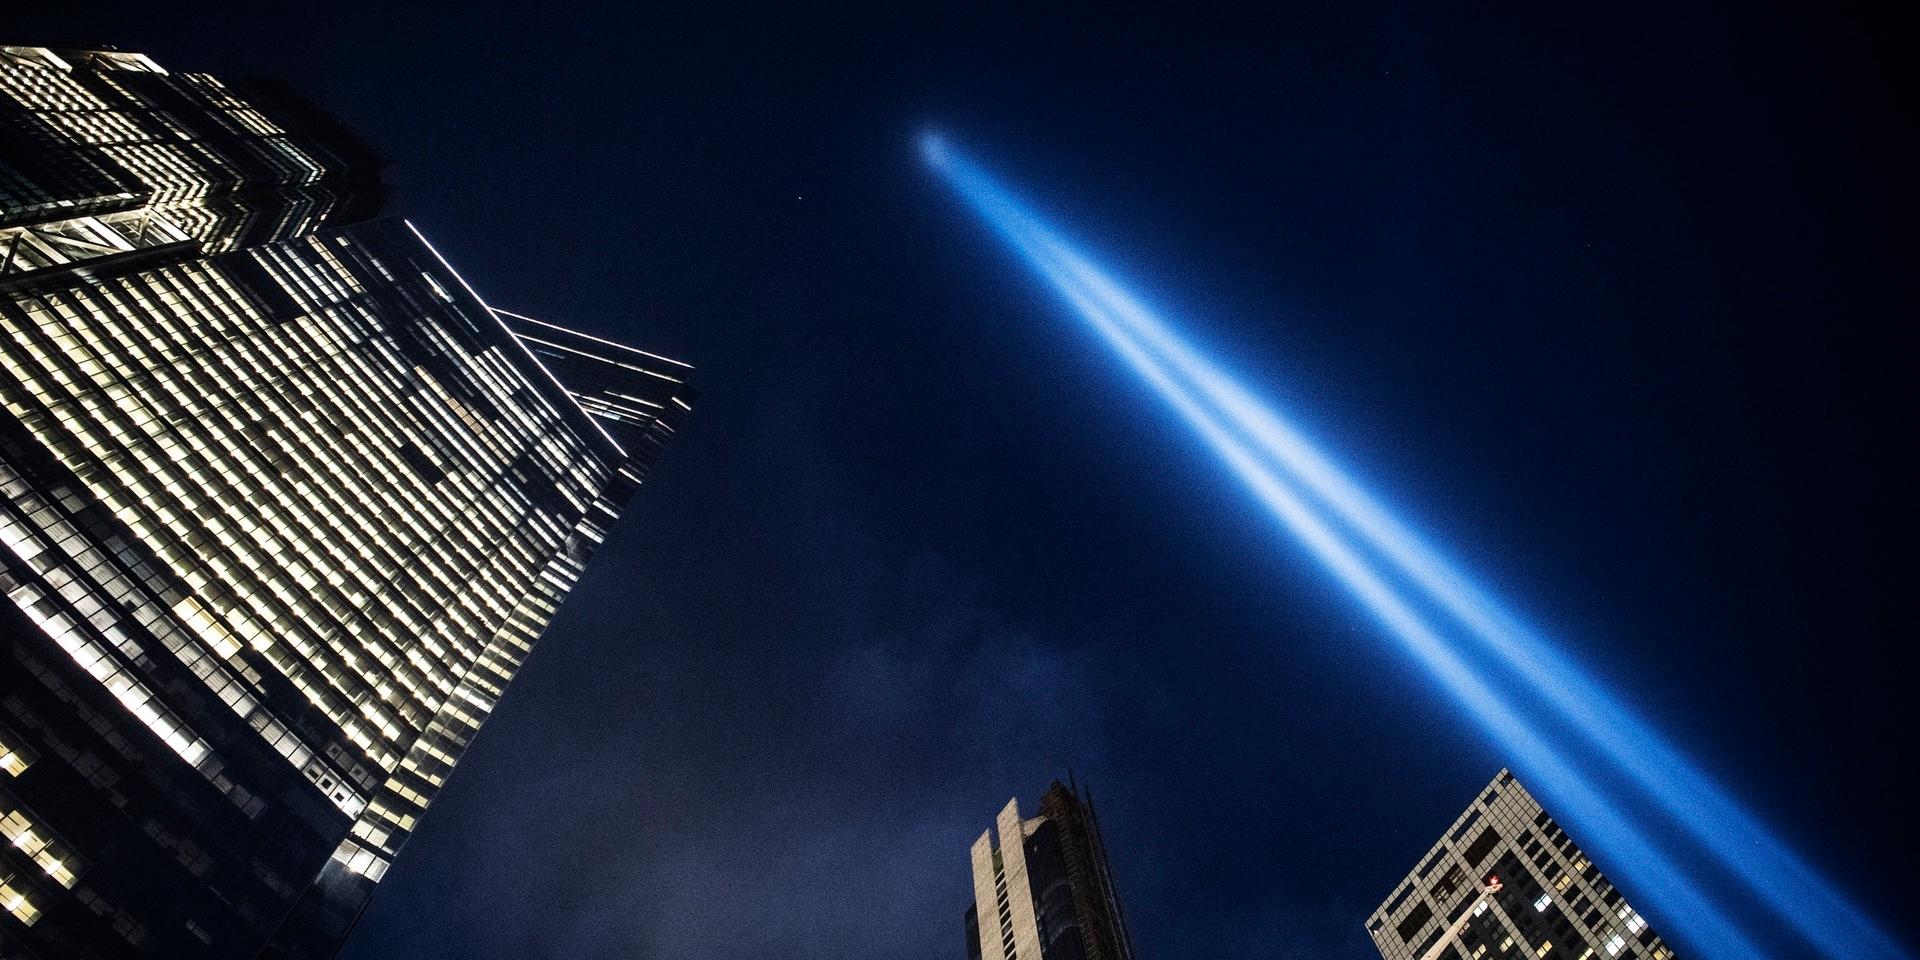 Vid Ground Zero lyser starka strålkastare upp himlen och markerar platsen där tornen stod.